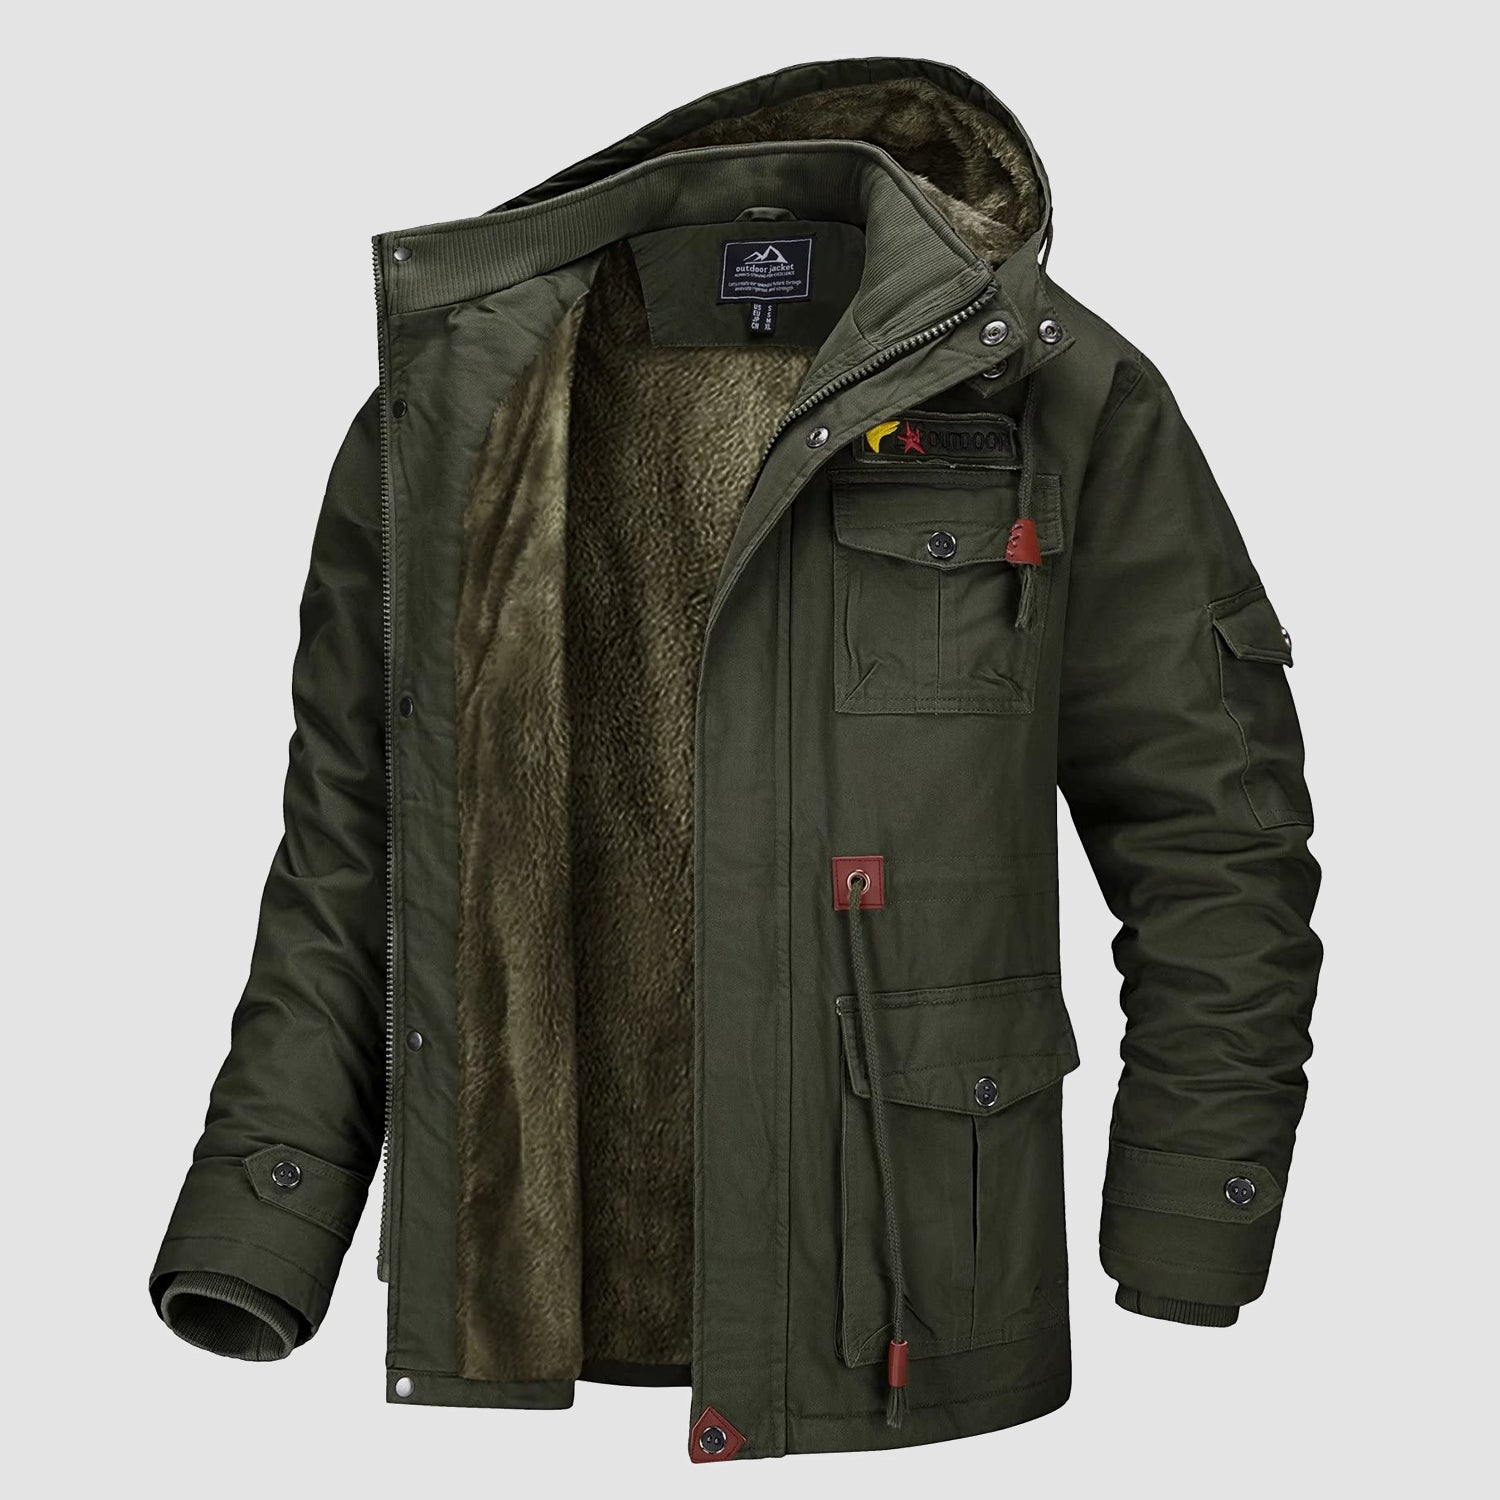 Cargo Jacket, Men's Winter Jacket